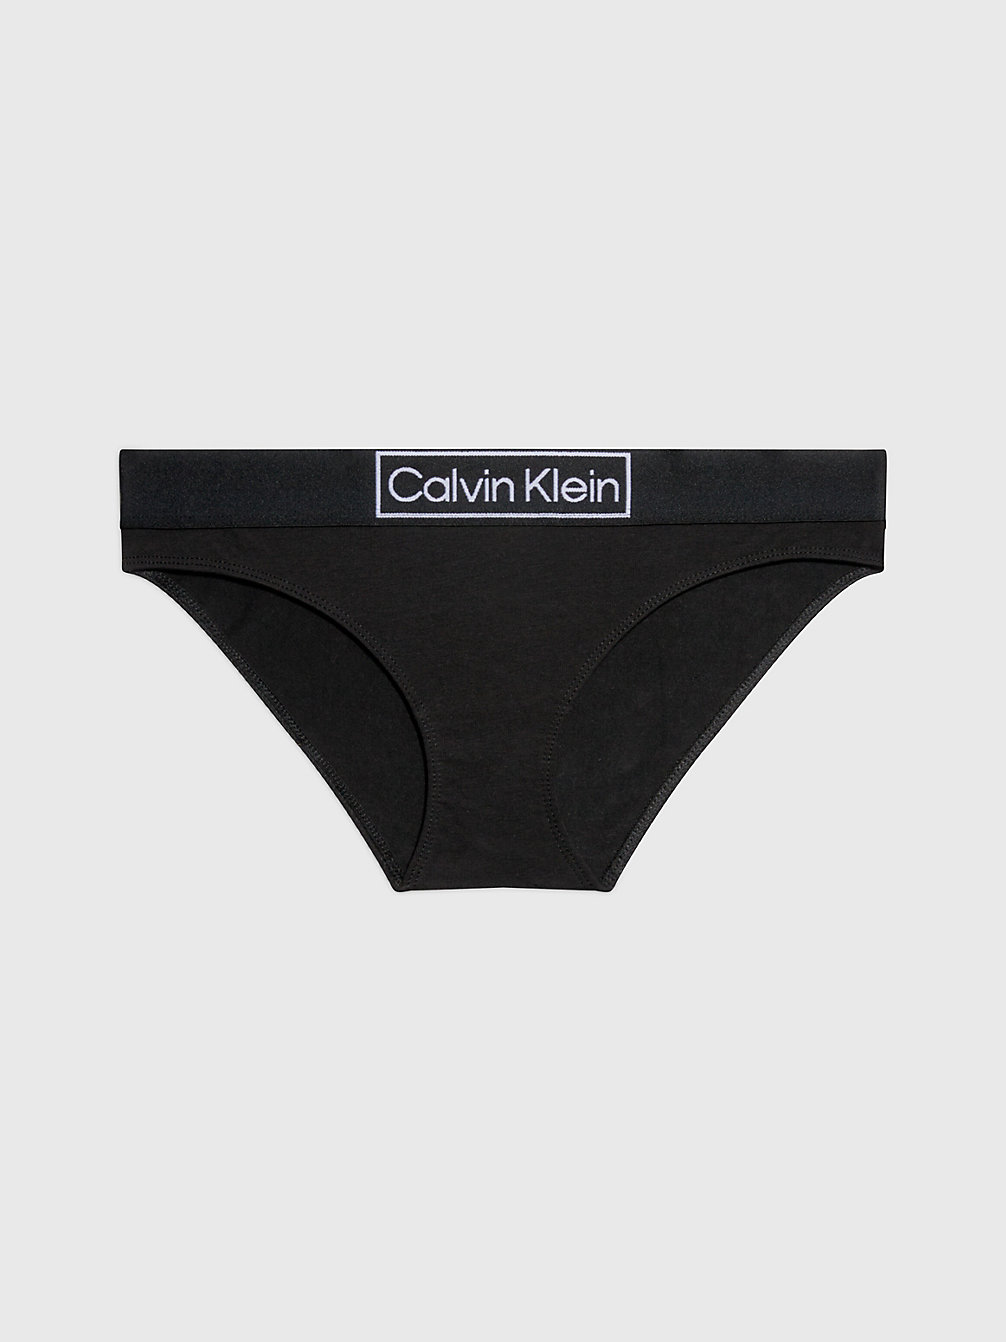 BLACK Bikini Brief - Reimagined Heritage undefined women Calvin Klein